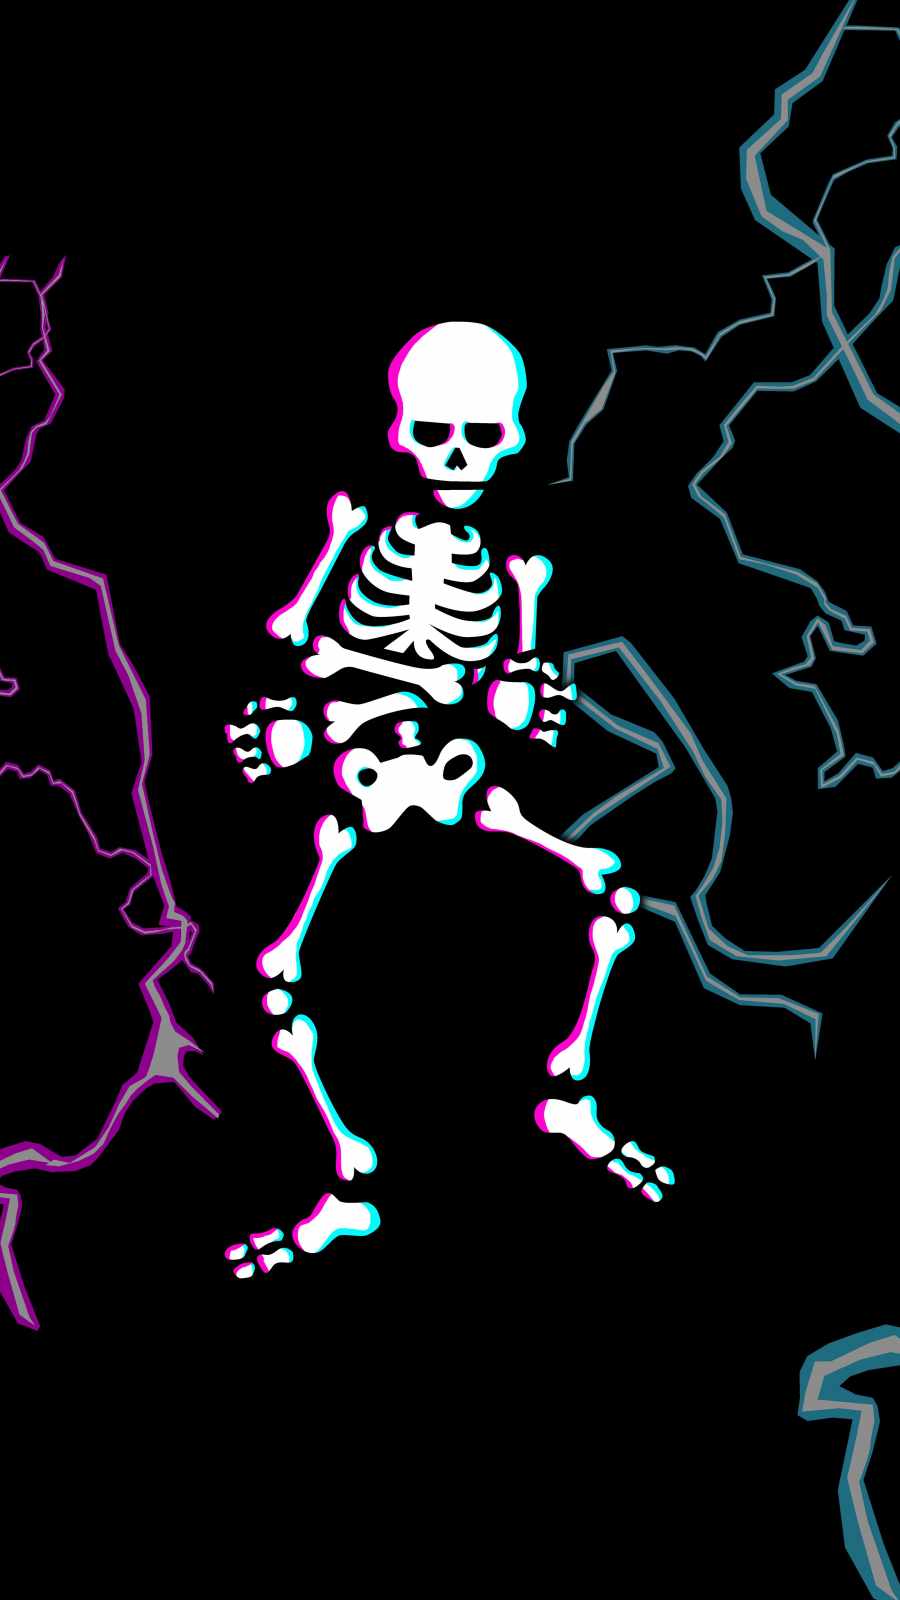 Dancing Skull IPhone Wallpaper Wallpaper, iPhone Wallpaper